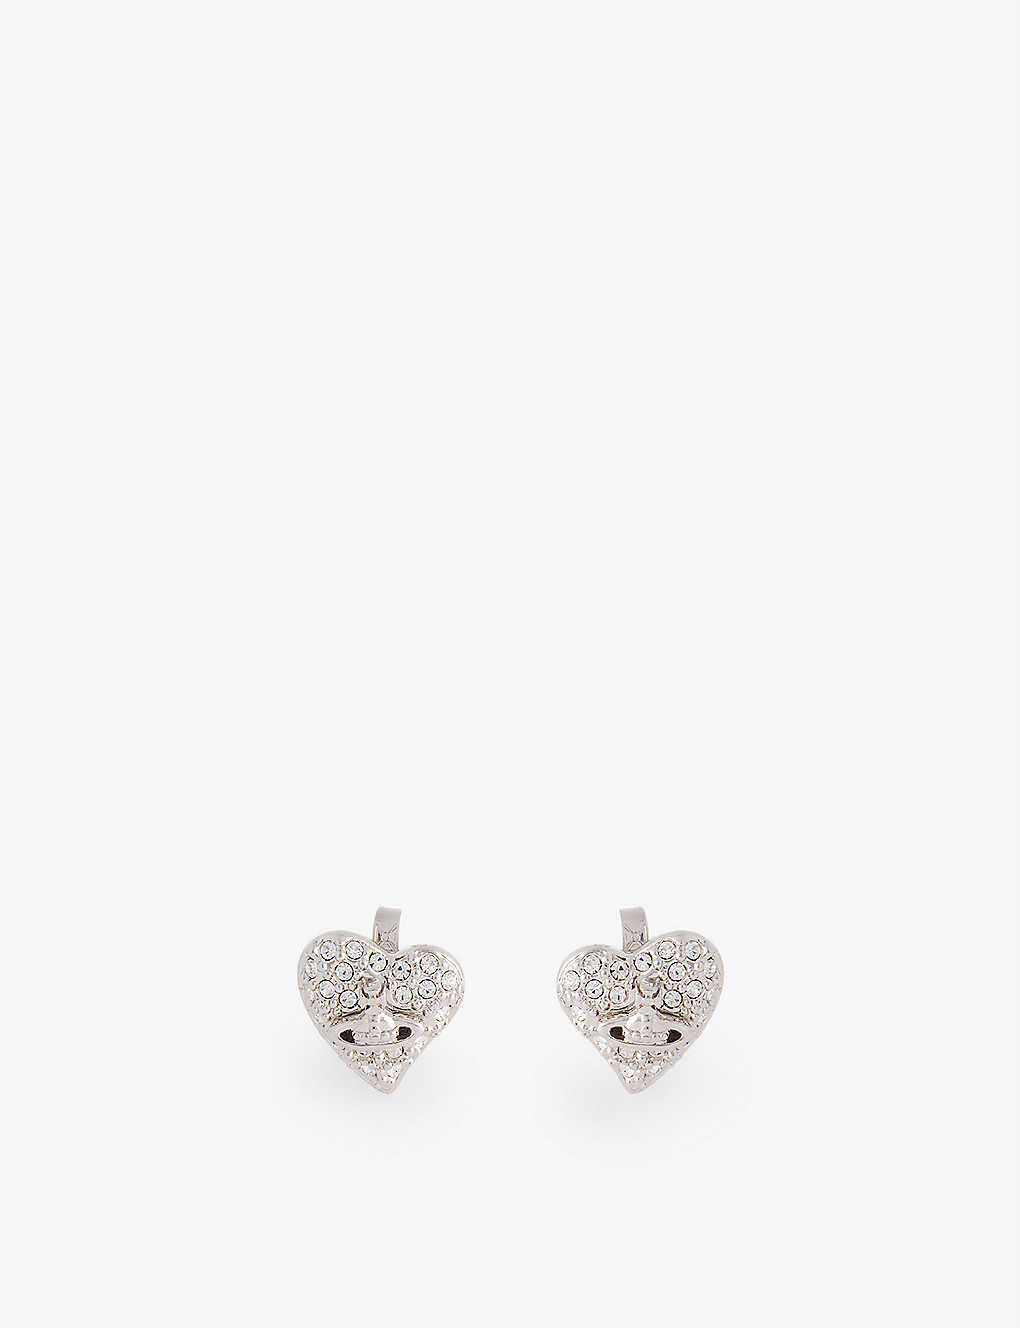 VIVIENNE WESTWOOD JEWELLERY - Heart-shaped mini brass earrings